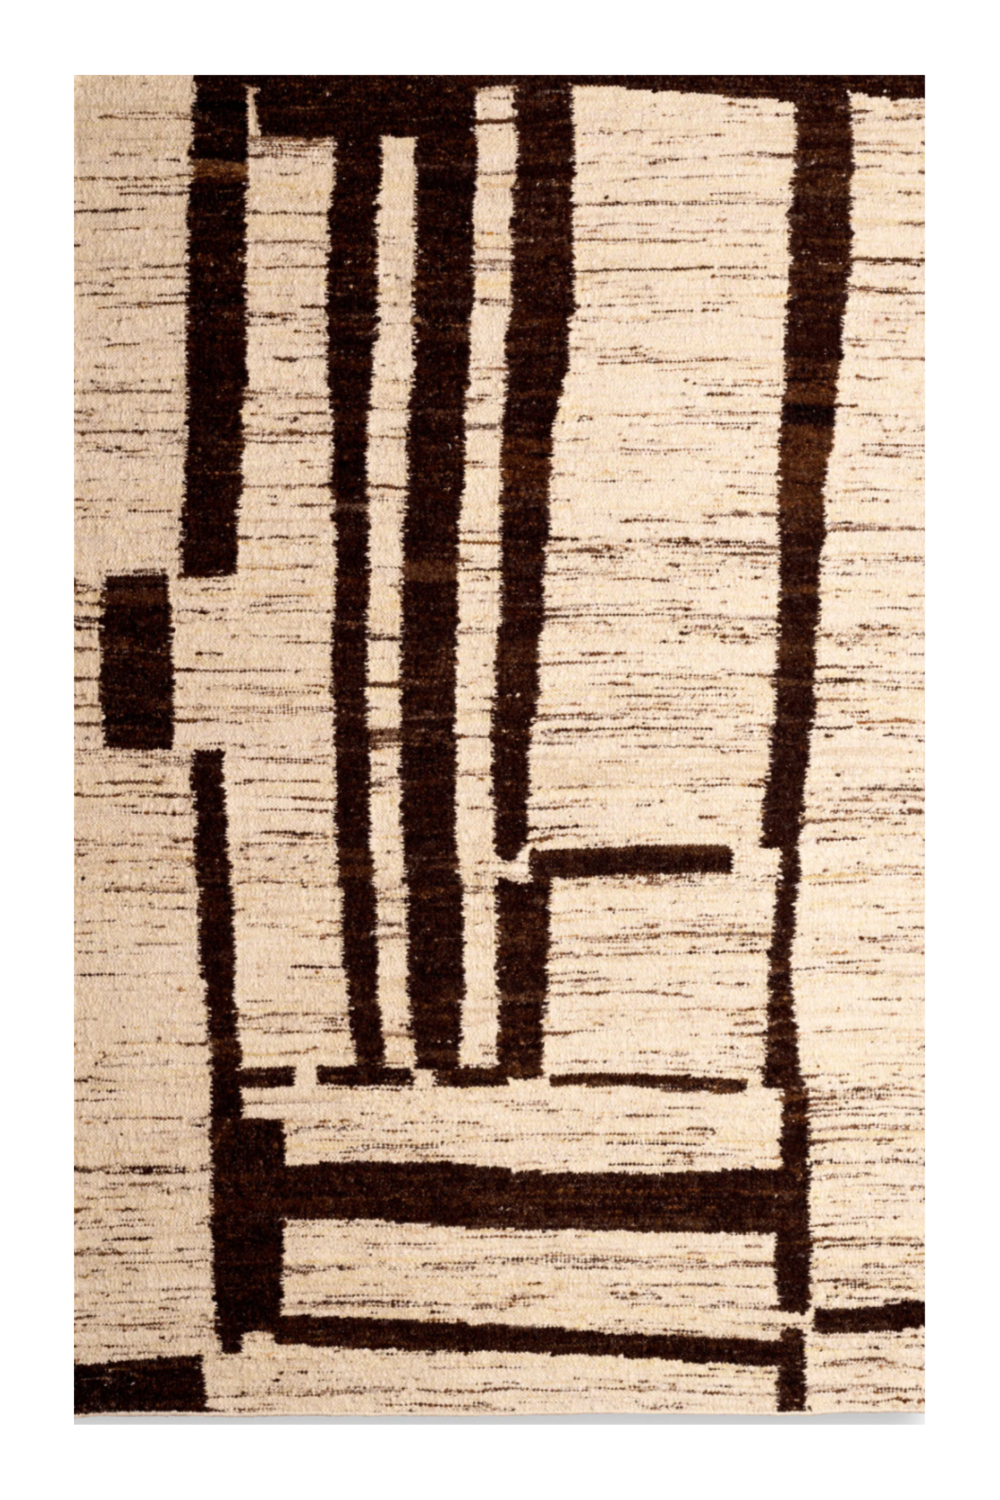 Brown Weave Wool Carpet | Eichholtz Carinthia | Oroa.com